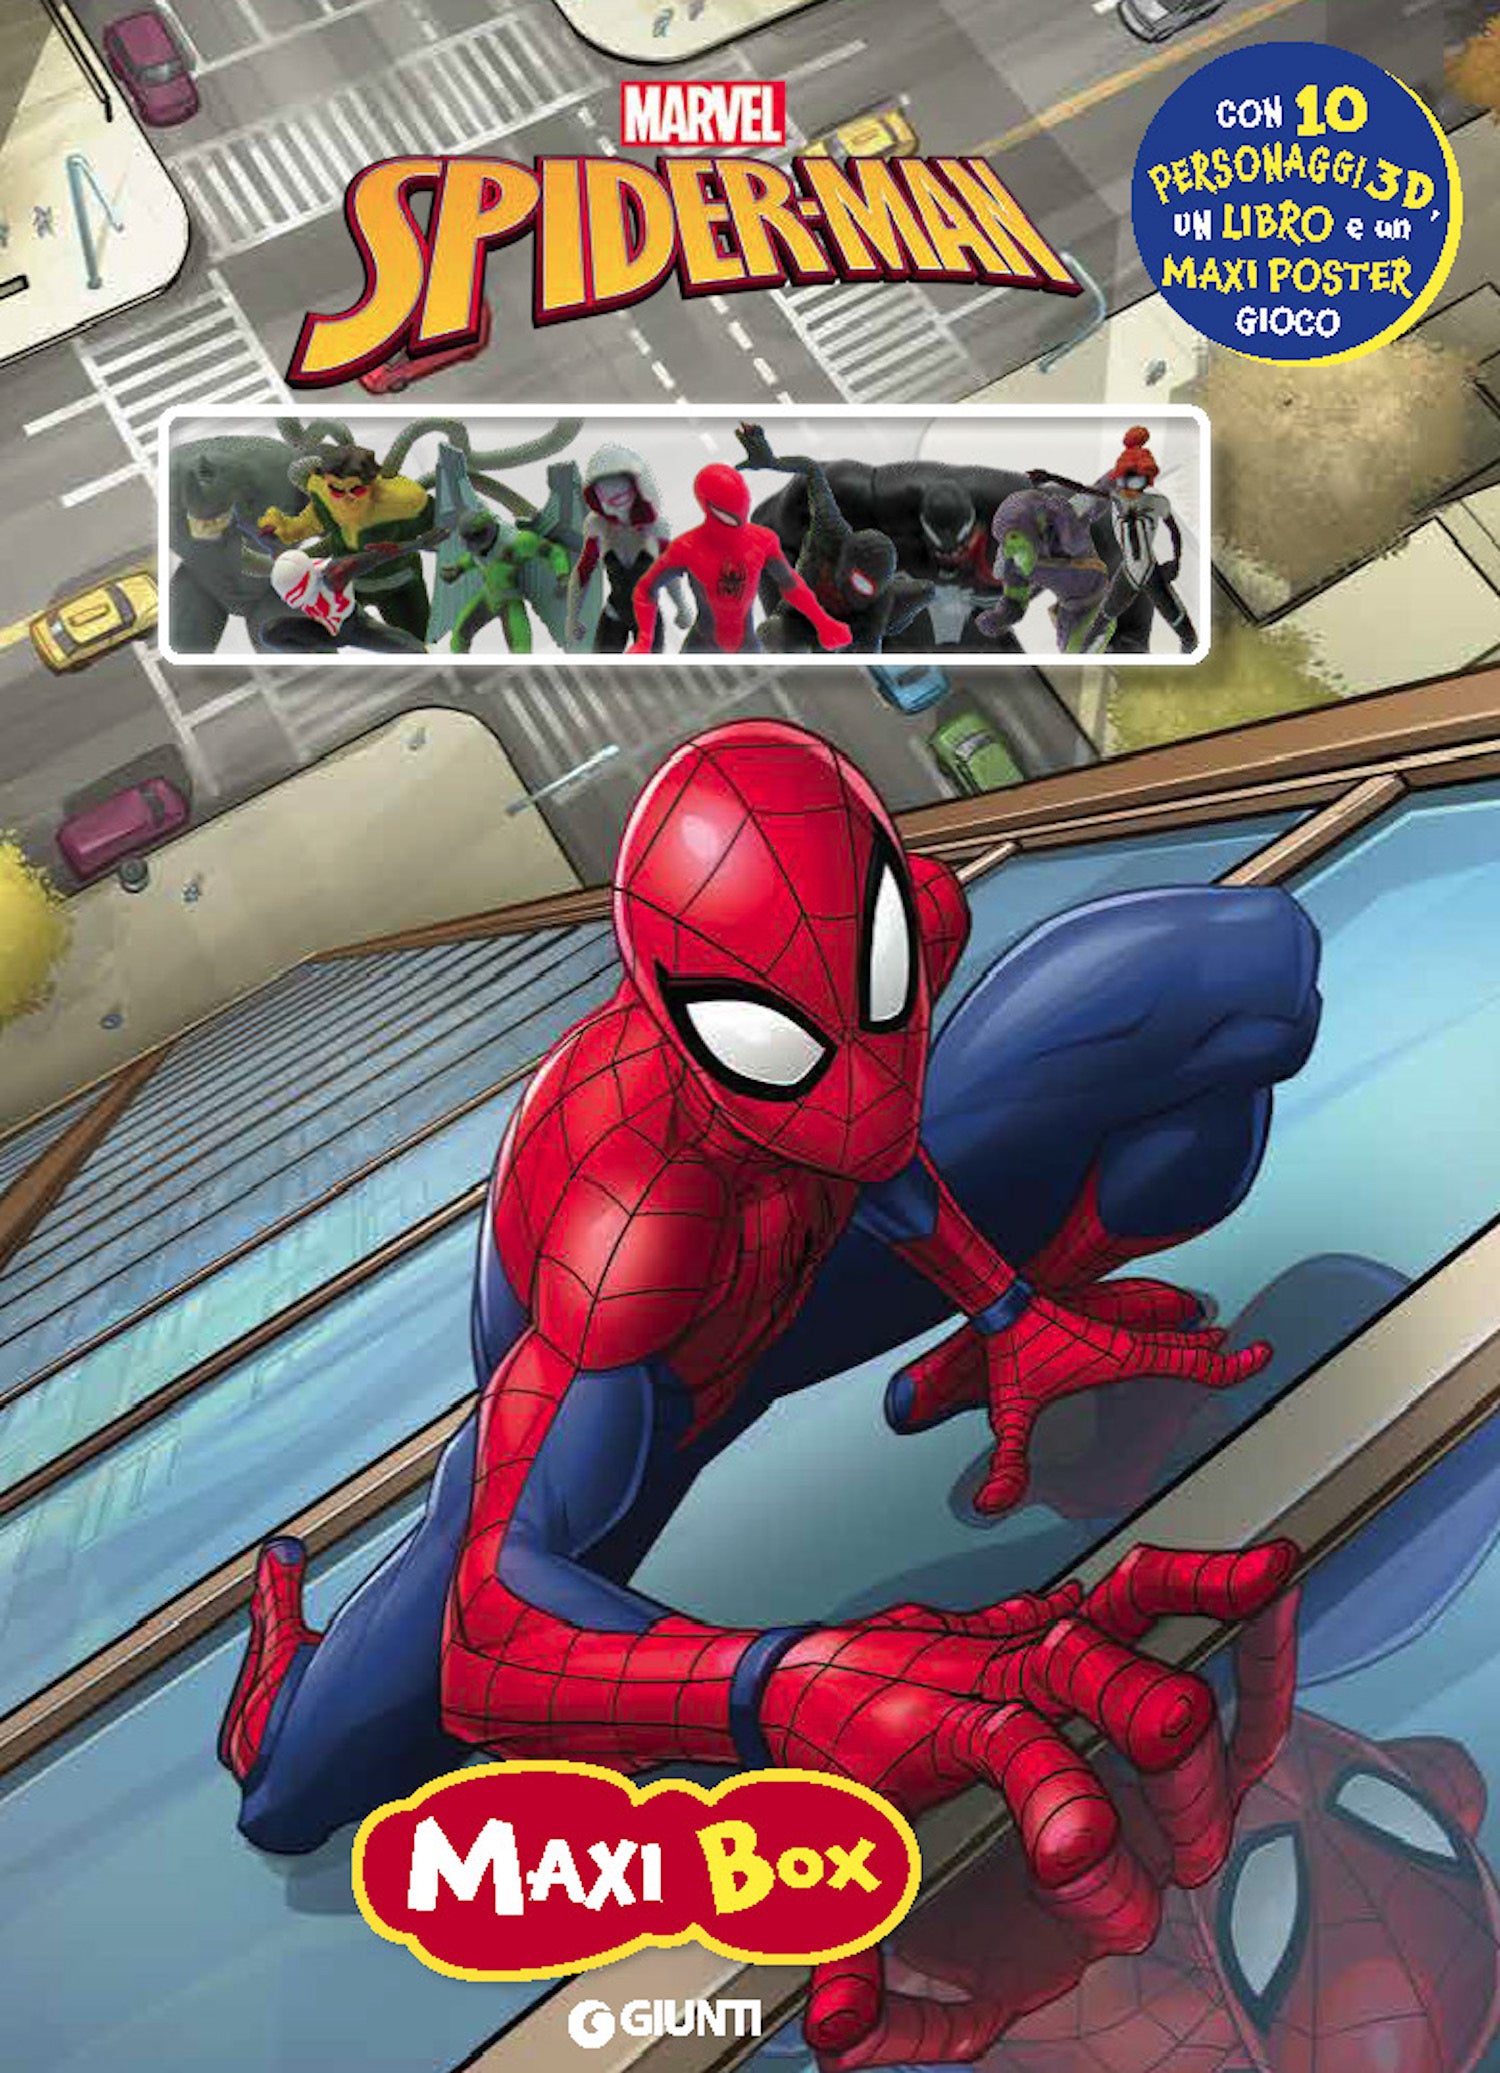 Spider-Man Maxi Box. Con 10 personaggi 3d, un libro e un maxi poster gioco:  libro di Walt Disney